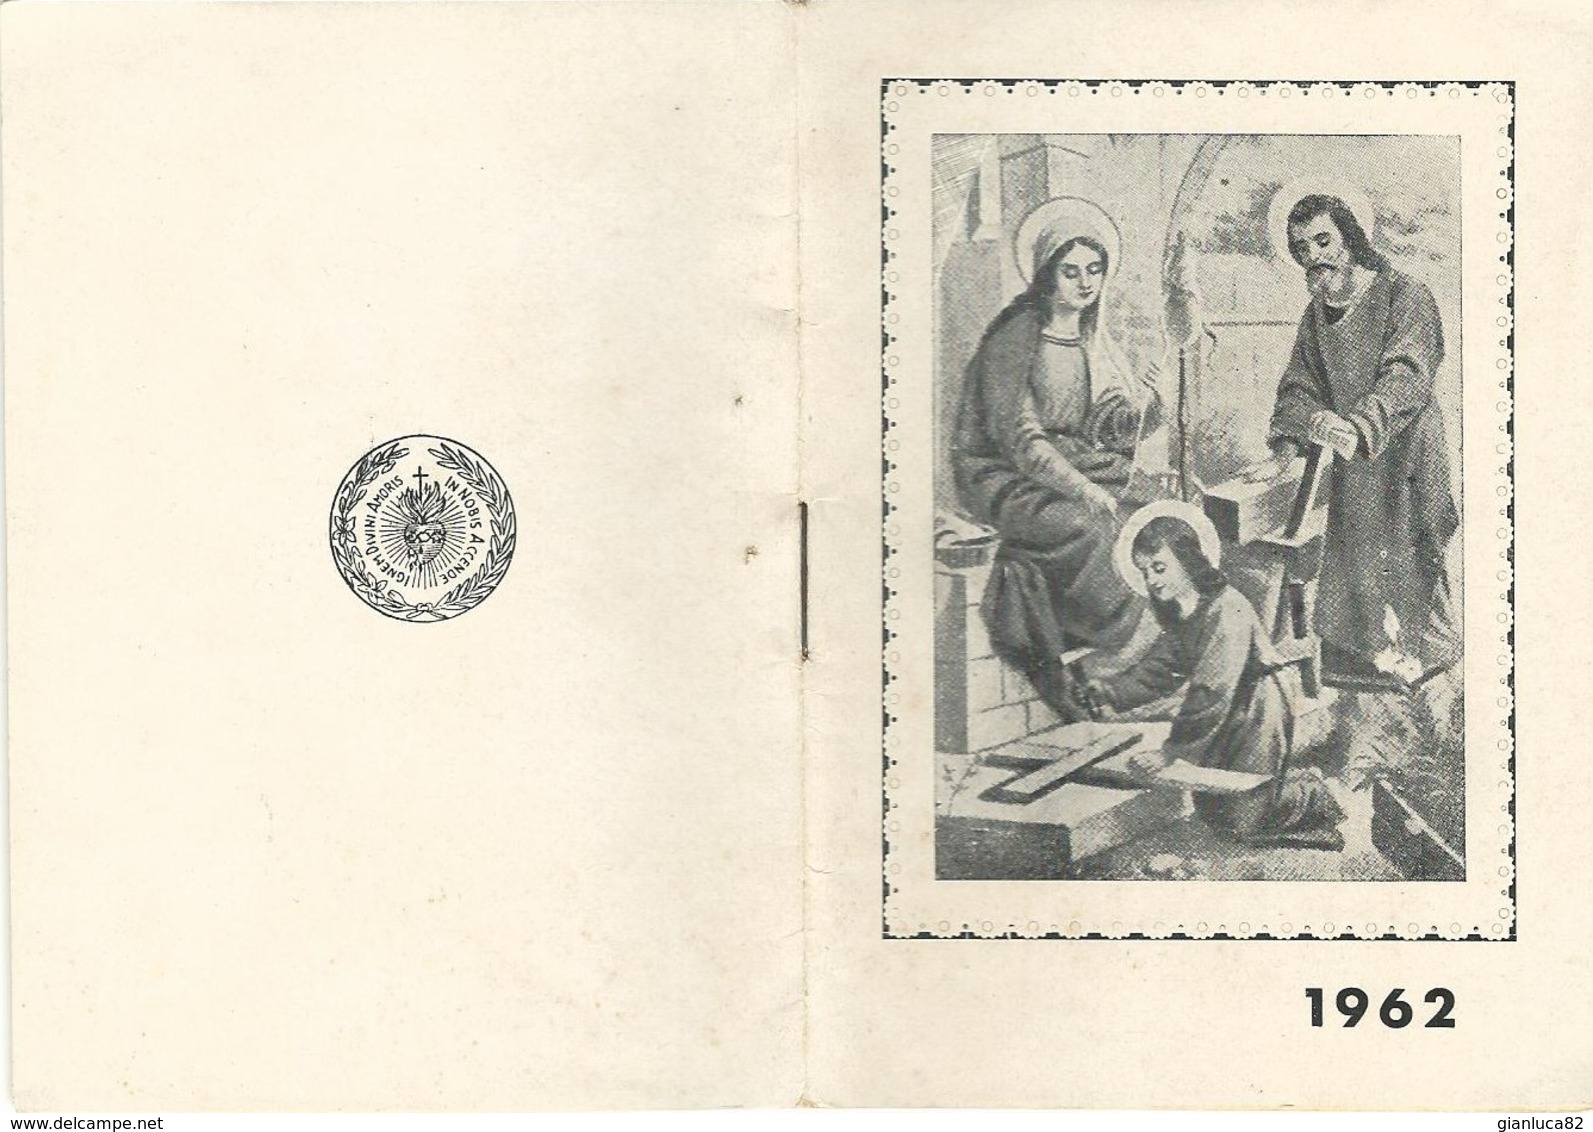 Calendarietto Jte Ad Joseph Opera Divino Amore Napoli 1963 12,0 X 8,3 Pag. 20 (64) - Petit Format : 1961-70